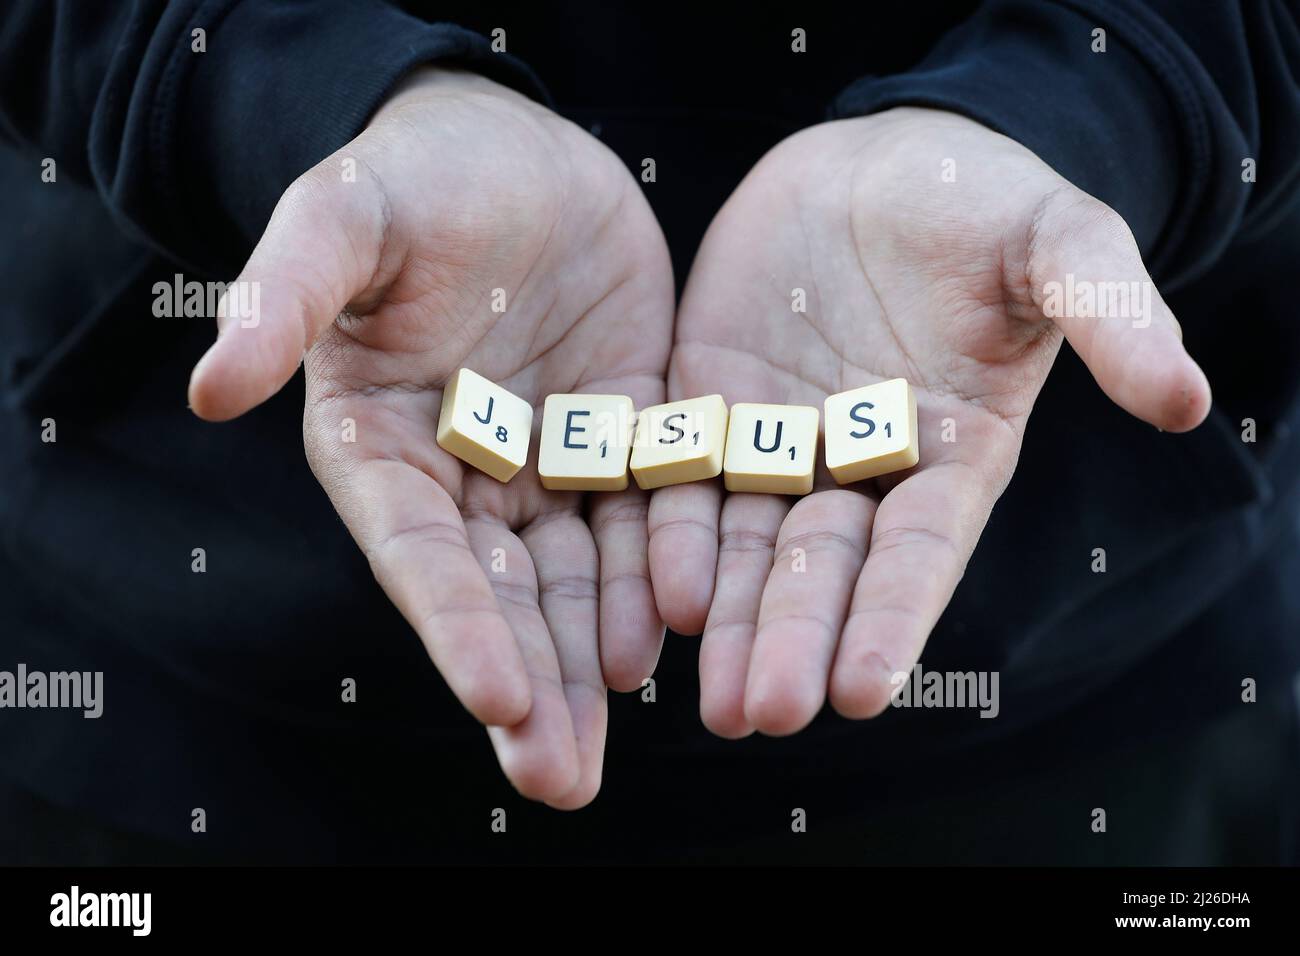 Garçon montrant des lettres épelant Jésus. Eure, France Banque D'Images